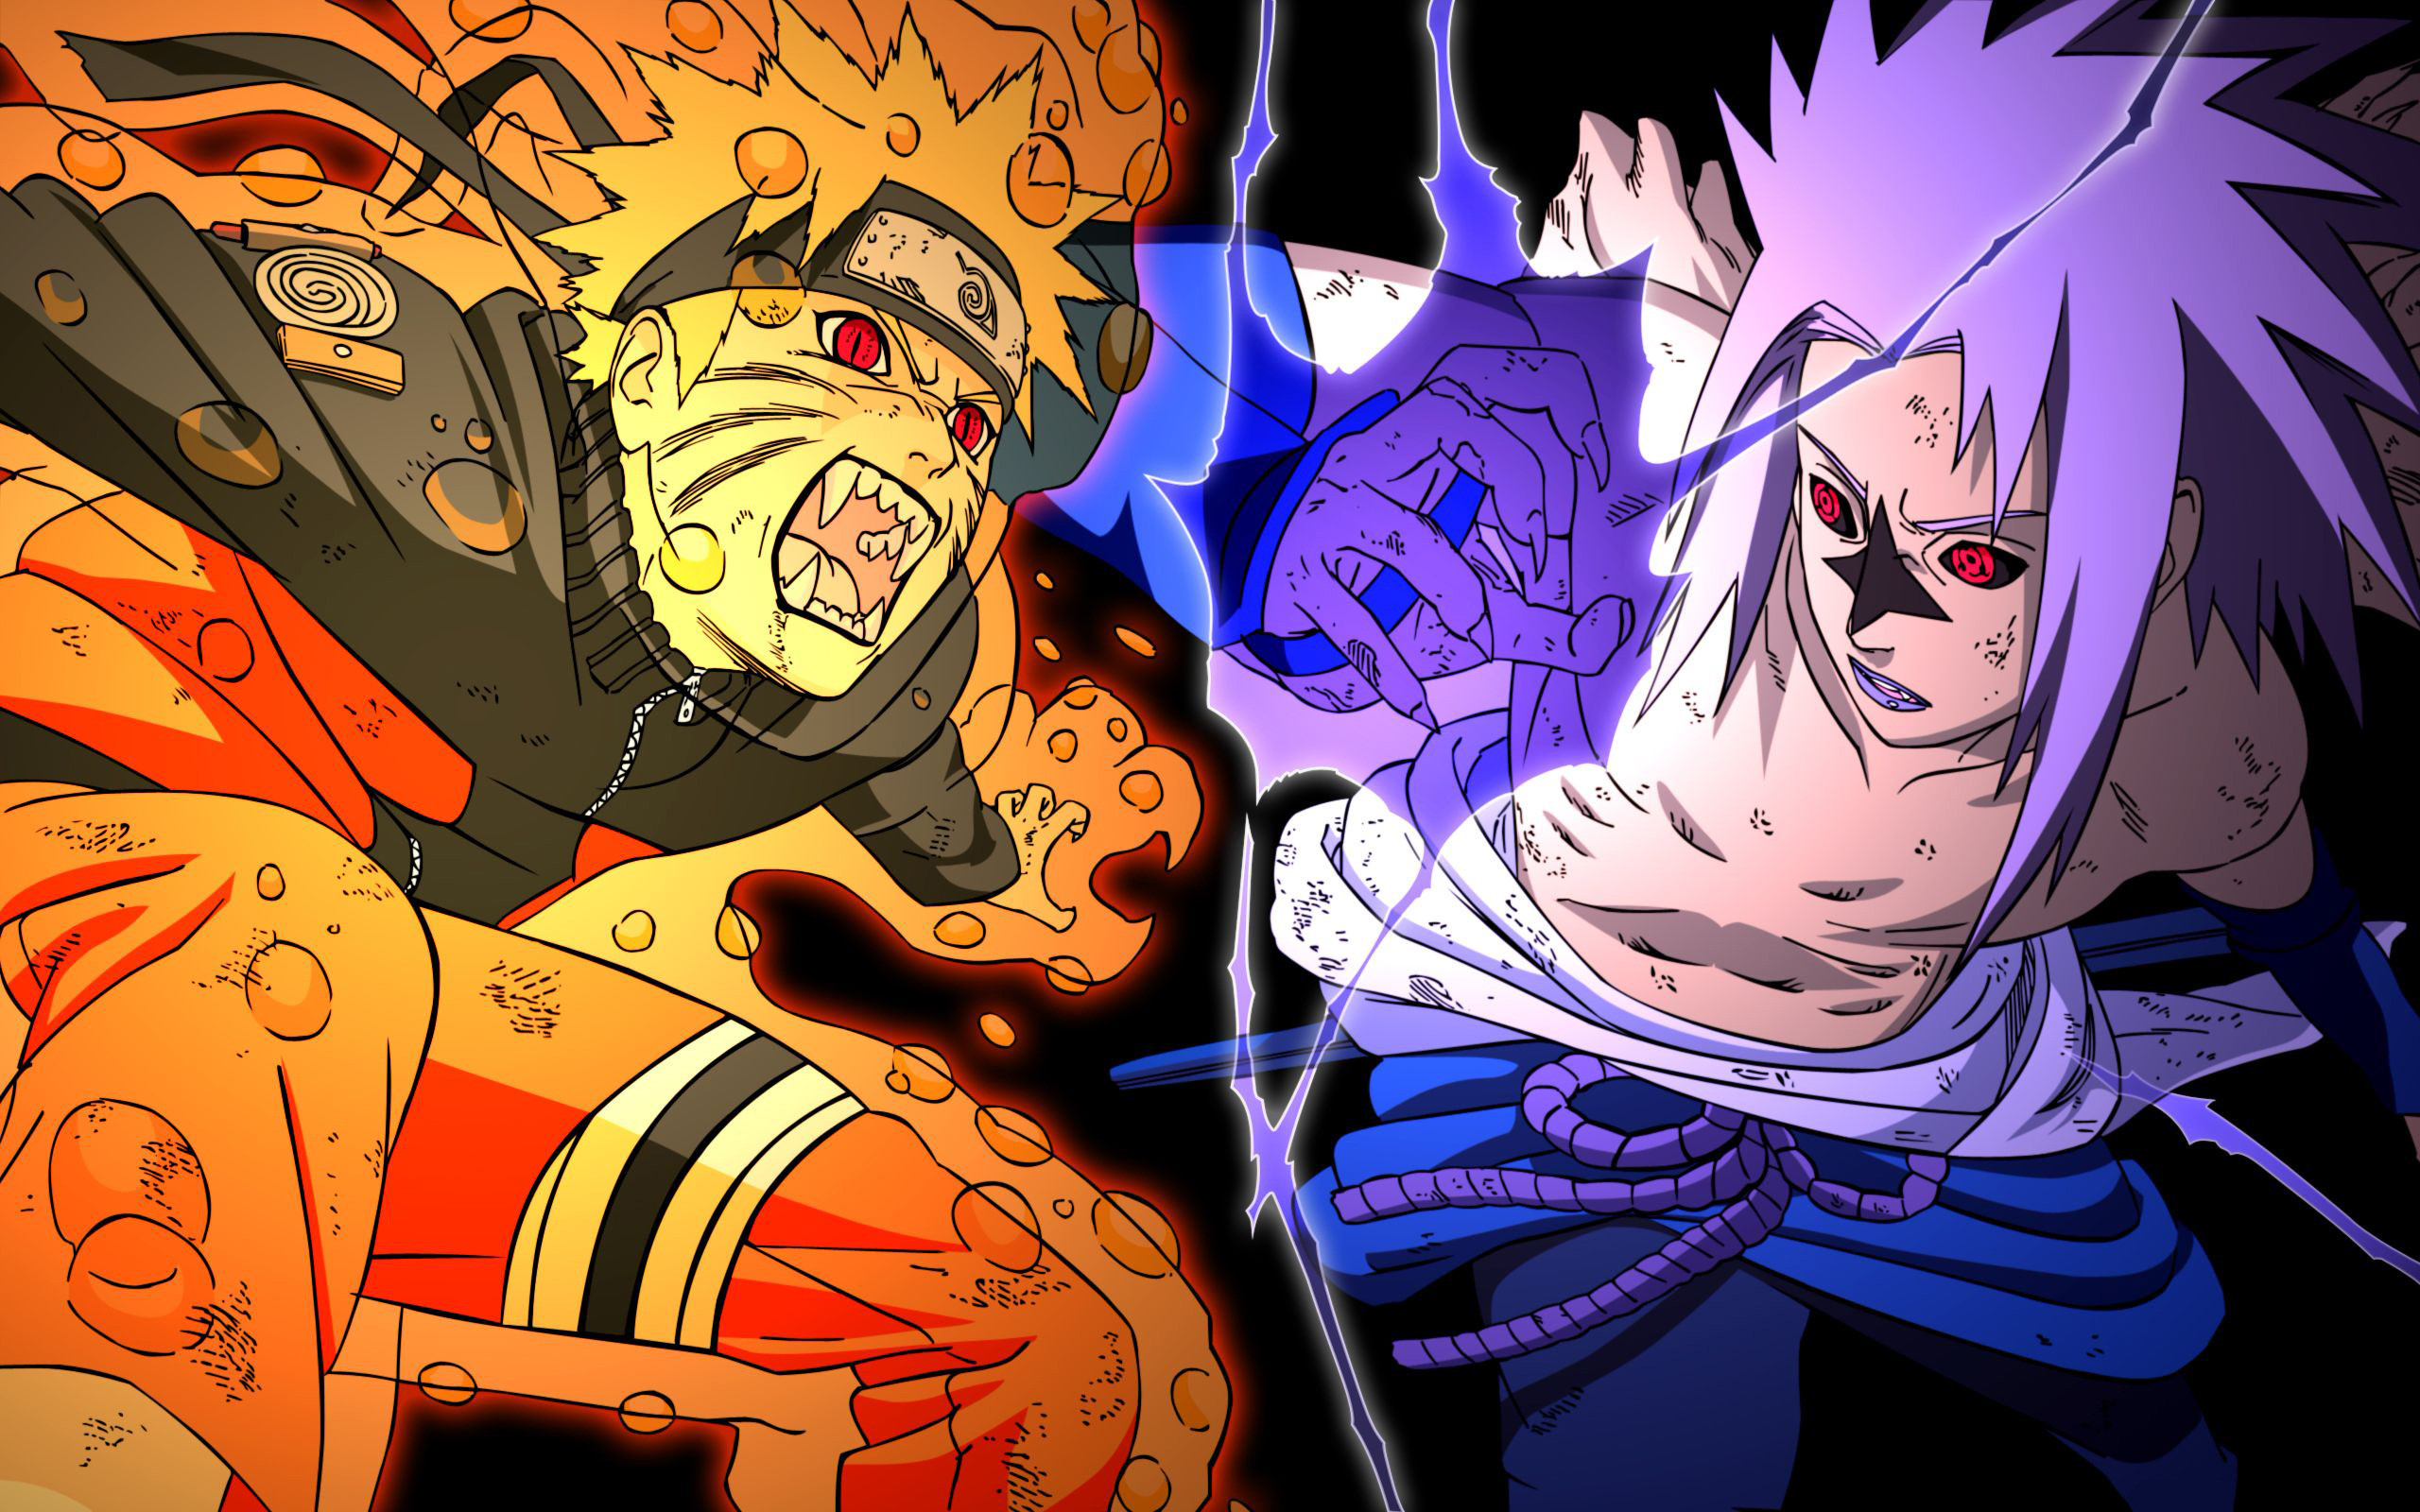 2560x1600 Sasuke vs Naruto Wallpaper HD - WallpaperSafari